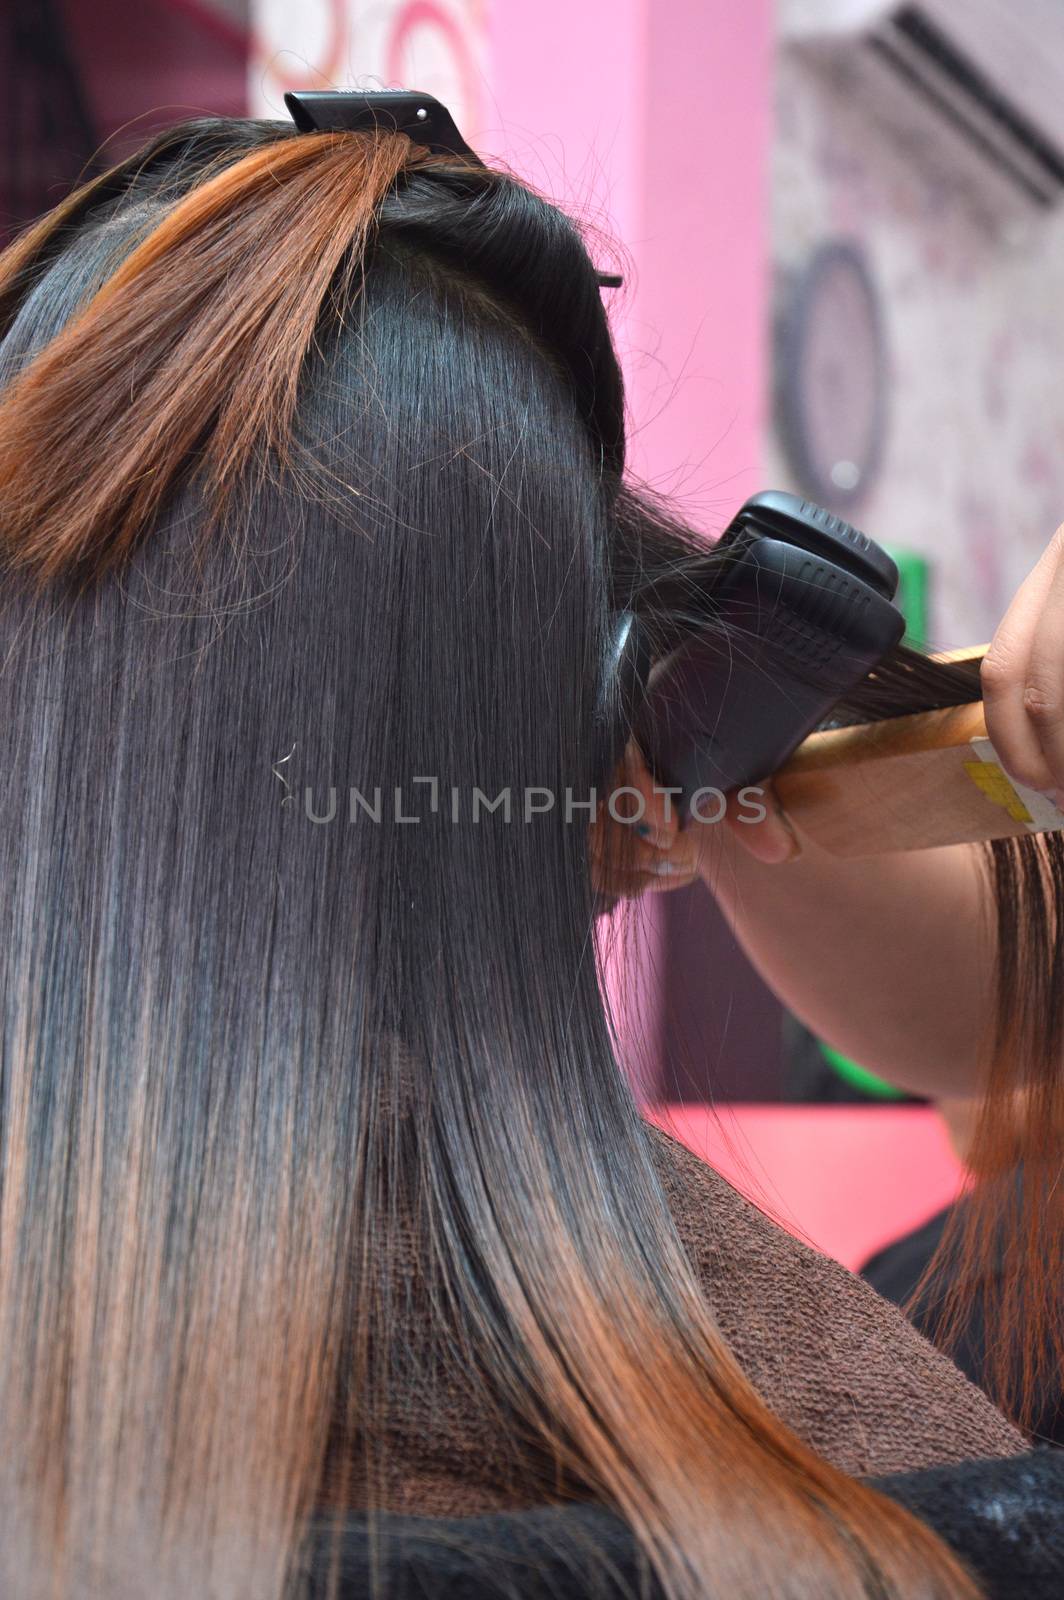 hair treatment clamp hair in beauty salon